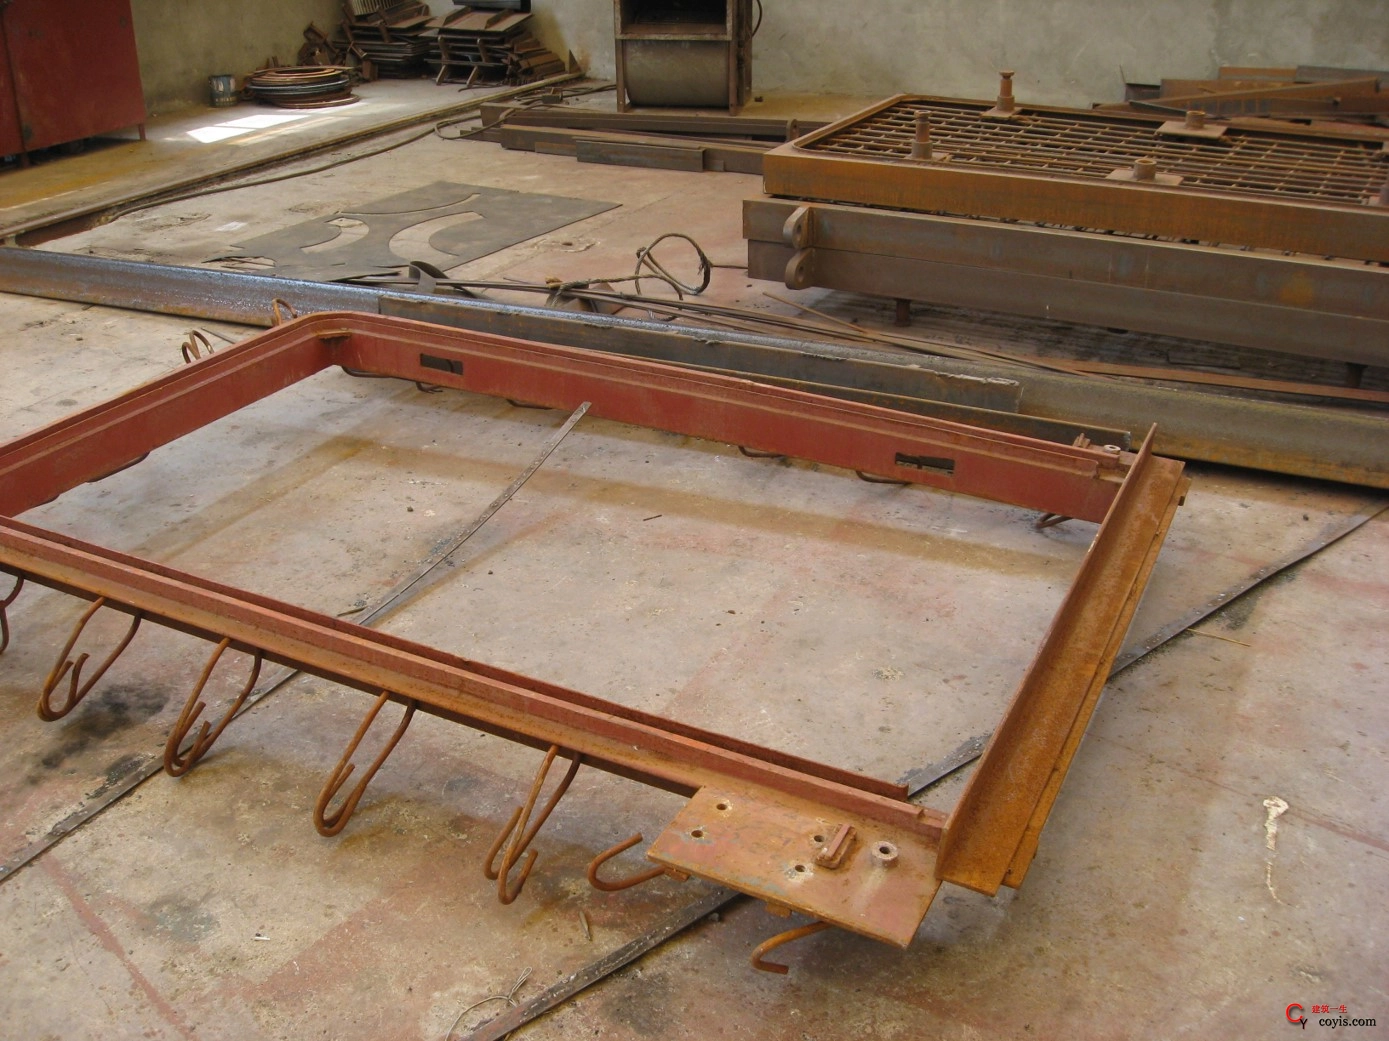 门框： 须在厂家制作（包括锚钩焊接），不可现场焊接；